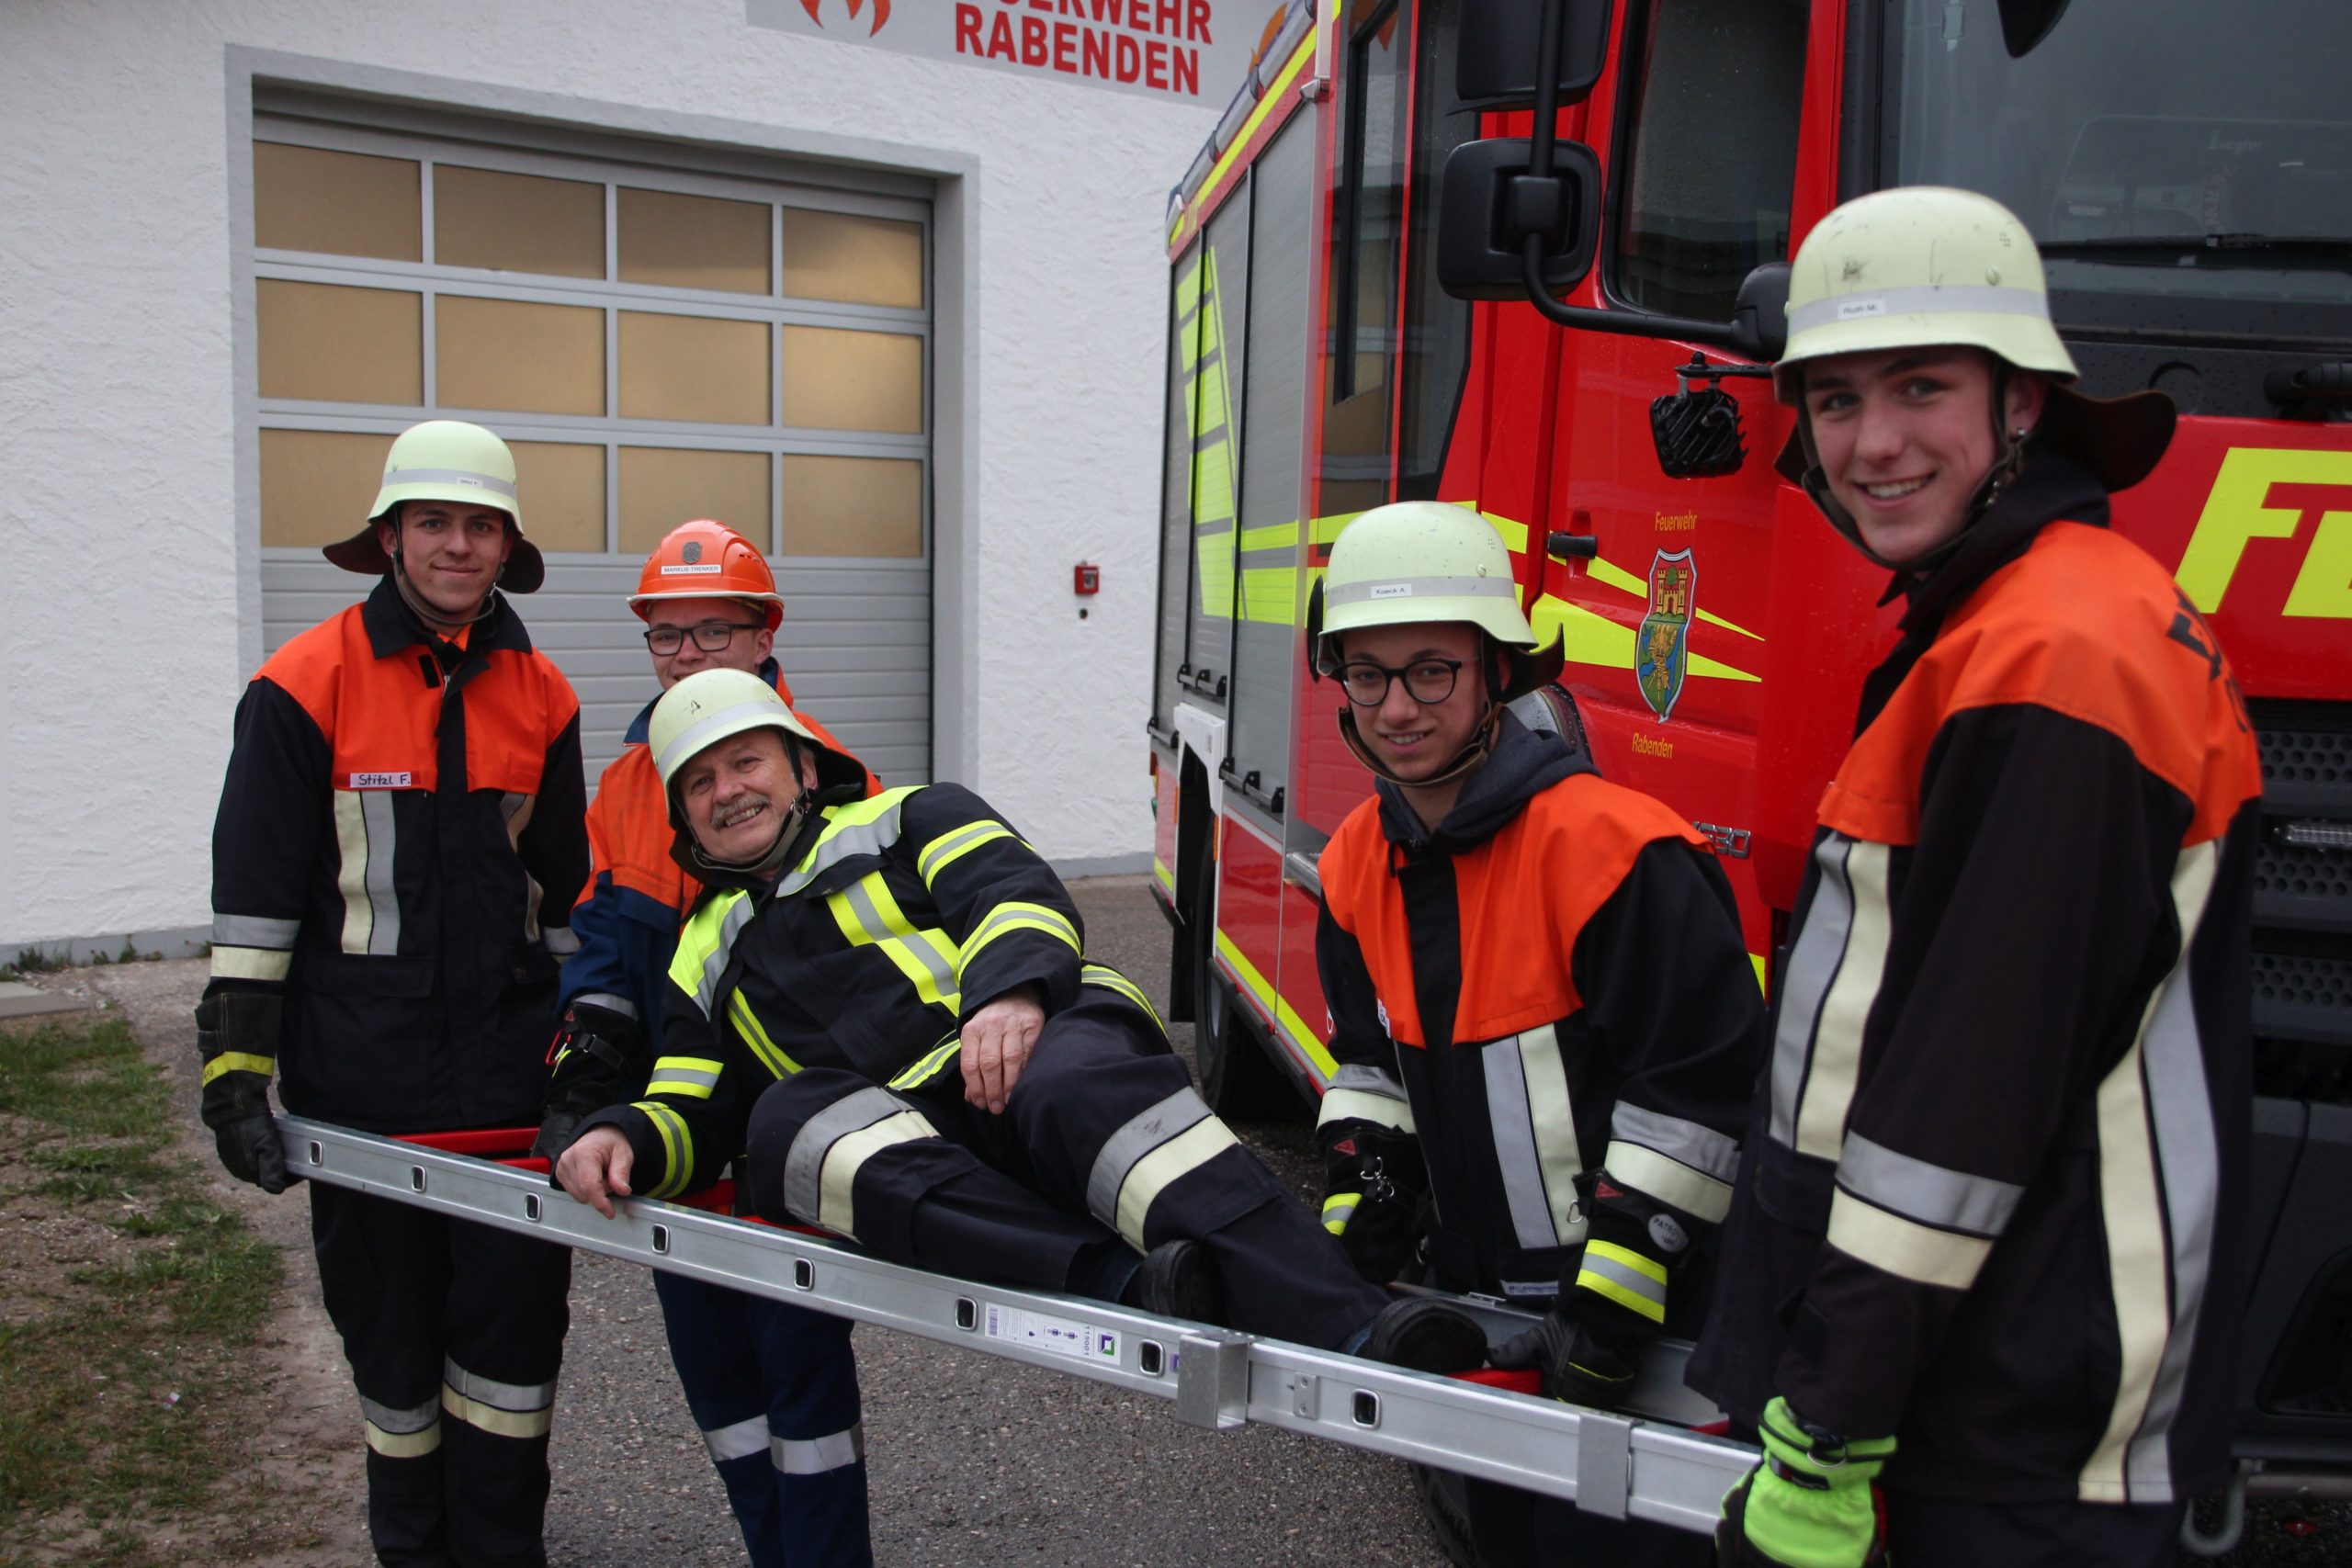 Konrad Haller lässt sich von jungen Feuerwehrlern auf einer Leier tragen